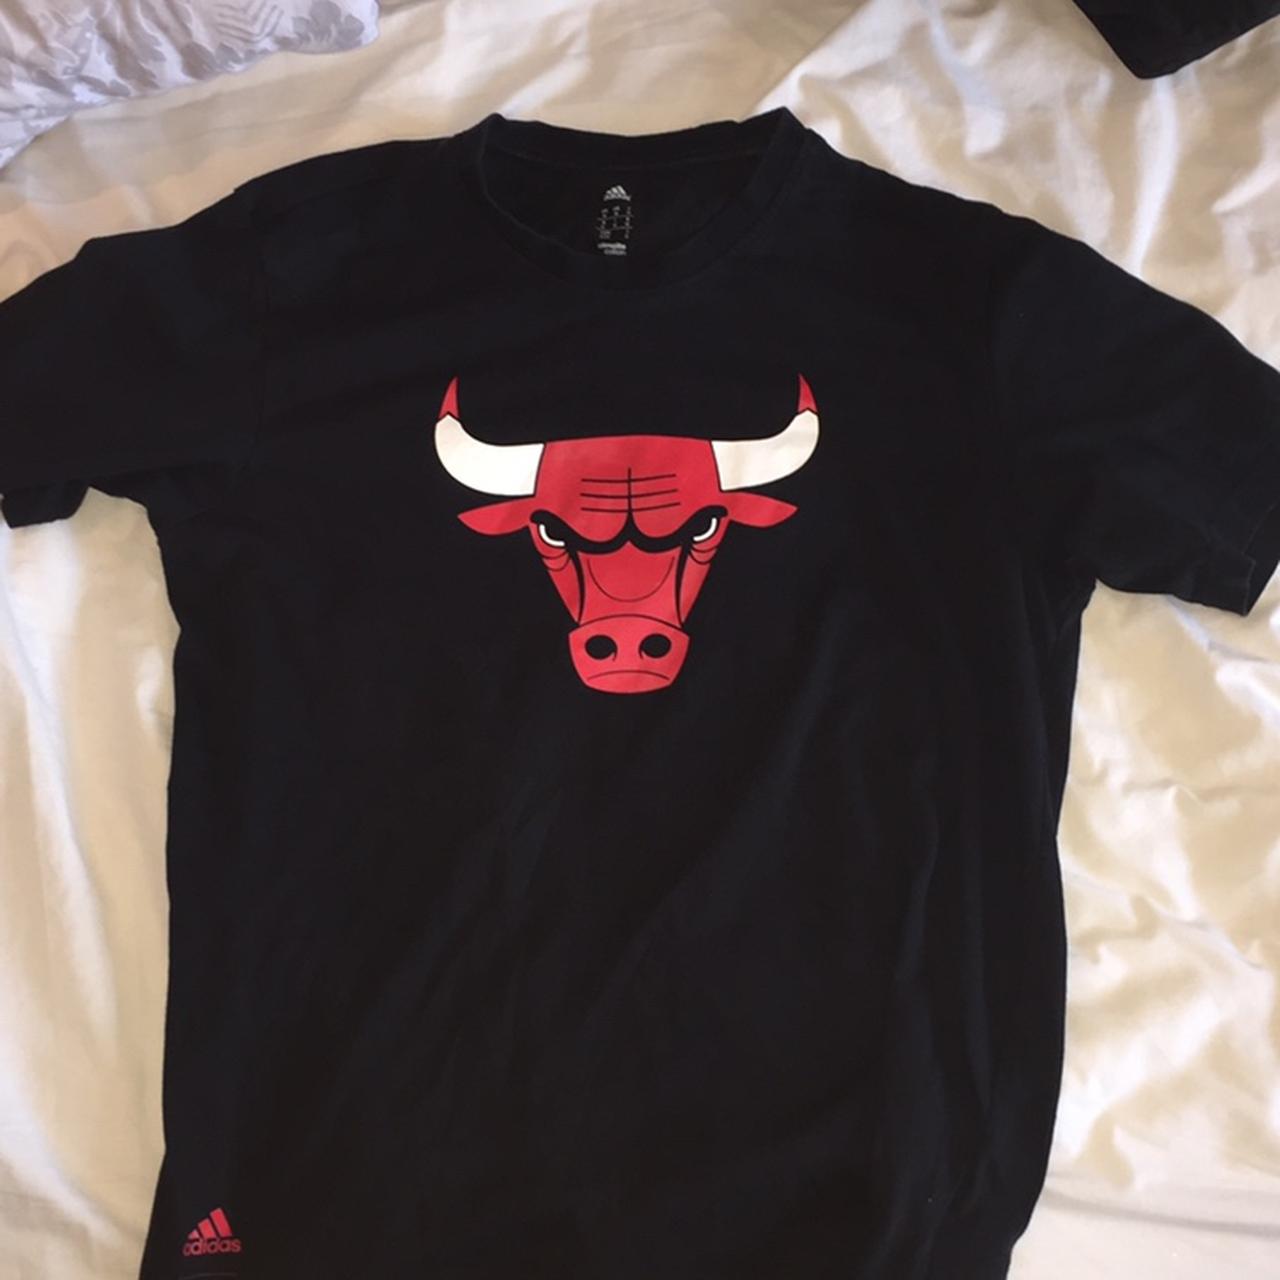 bulls t shirt adidas